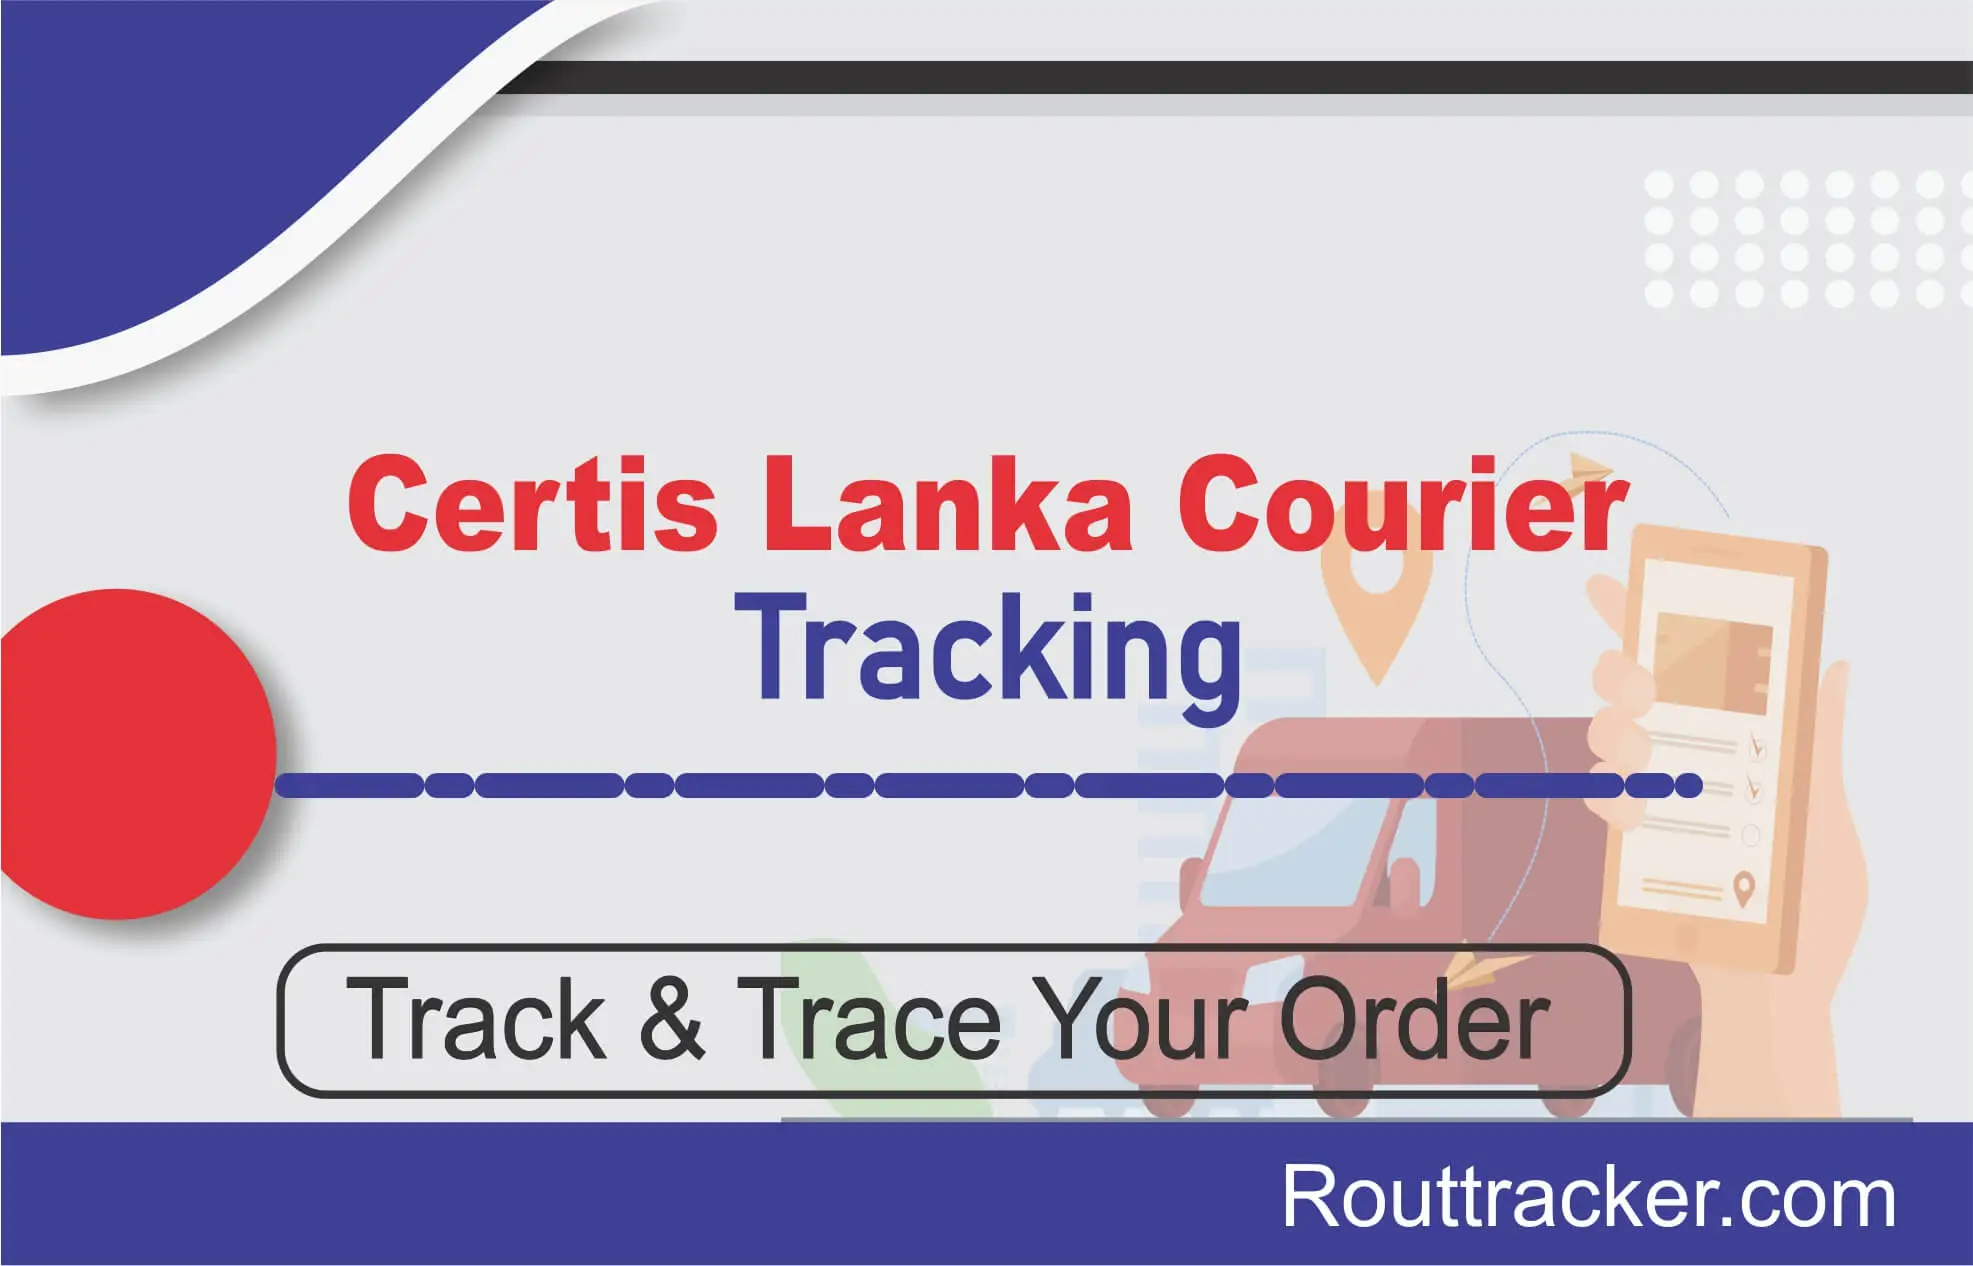 Certis Lanka Courier Tracking